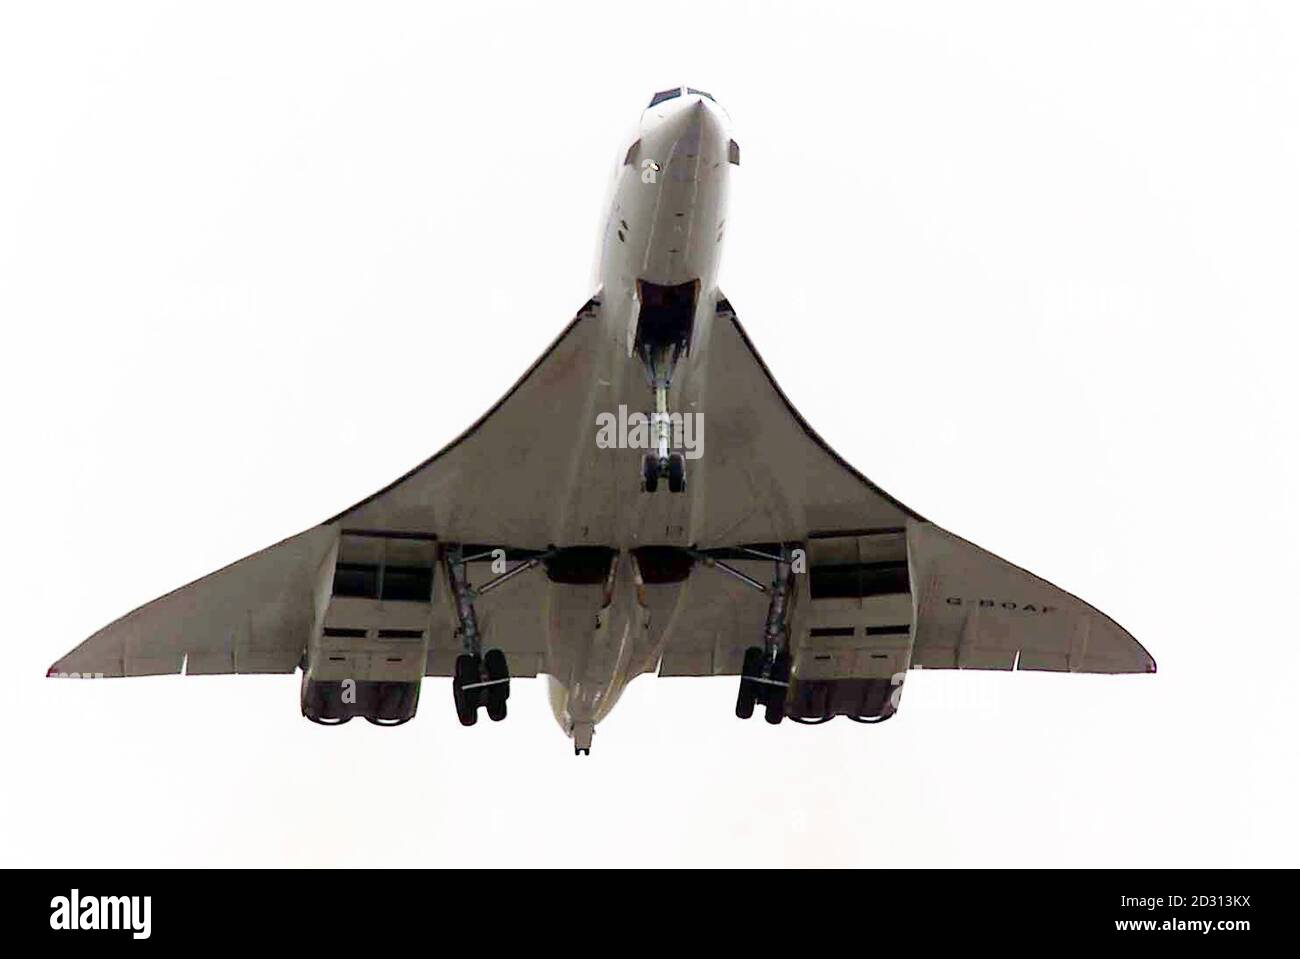 Eine British Airways Concorde hob weniger als 24 Stunden vom Londoner Flughafen Heathrow ab, nachdem eines der Flugzeuge in Paris abgestürzt war und 113 Menschen getötet hatte. BA entschied sich für Schieß los. mit dem Flug nach New York, nachdem sie über Nacht umfangreiche Kontrollen ihrer Flotte durchgeführt hatte. * 26/07/00 einer British Airways Concorde. BA flog zum ersten Mal seit letztem Sommer einen seiner Concordes. Mit dem Chef-Concorde-Piloten Captain Mike Bister an den Kontrollen nahm das Überschallflugzeug vom Flughafen Heathrow ab, um einen dreistündigen 40-minütigen Testflug in den Atlantik zu Unternehmen. Der Verifizierungsflug, der Stockfoto